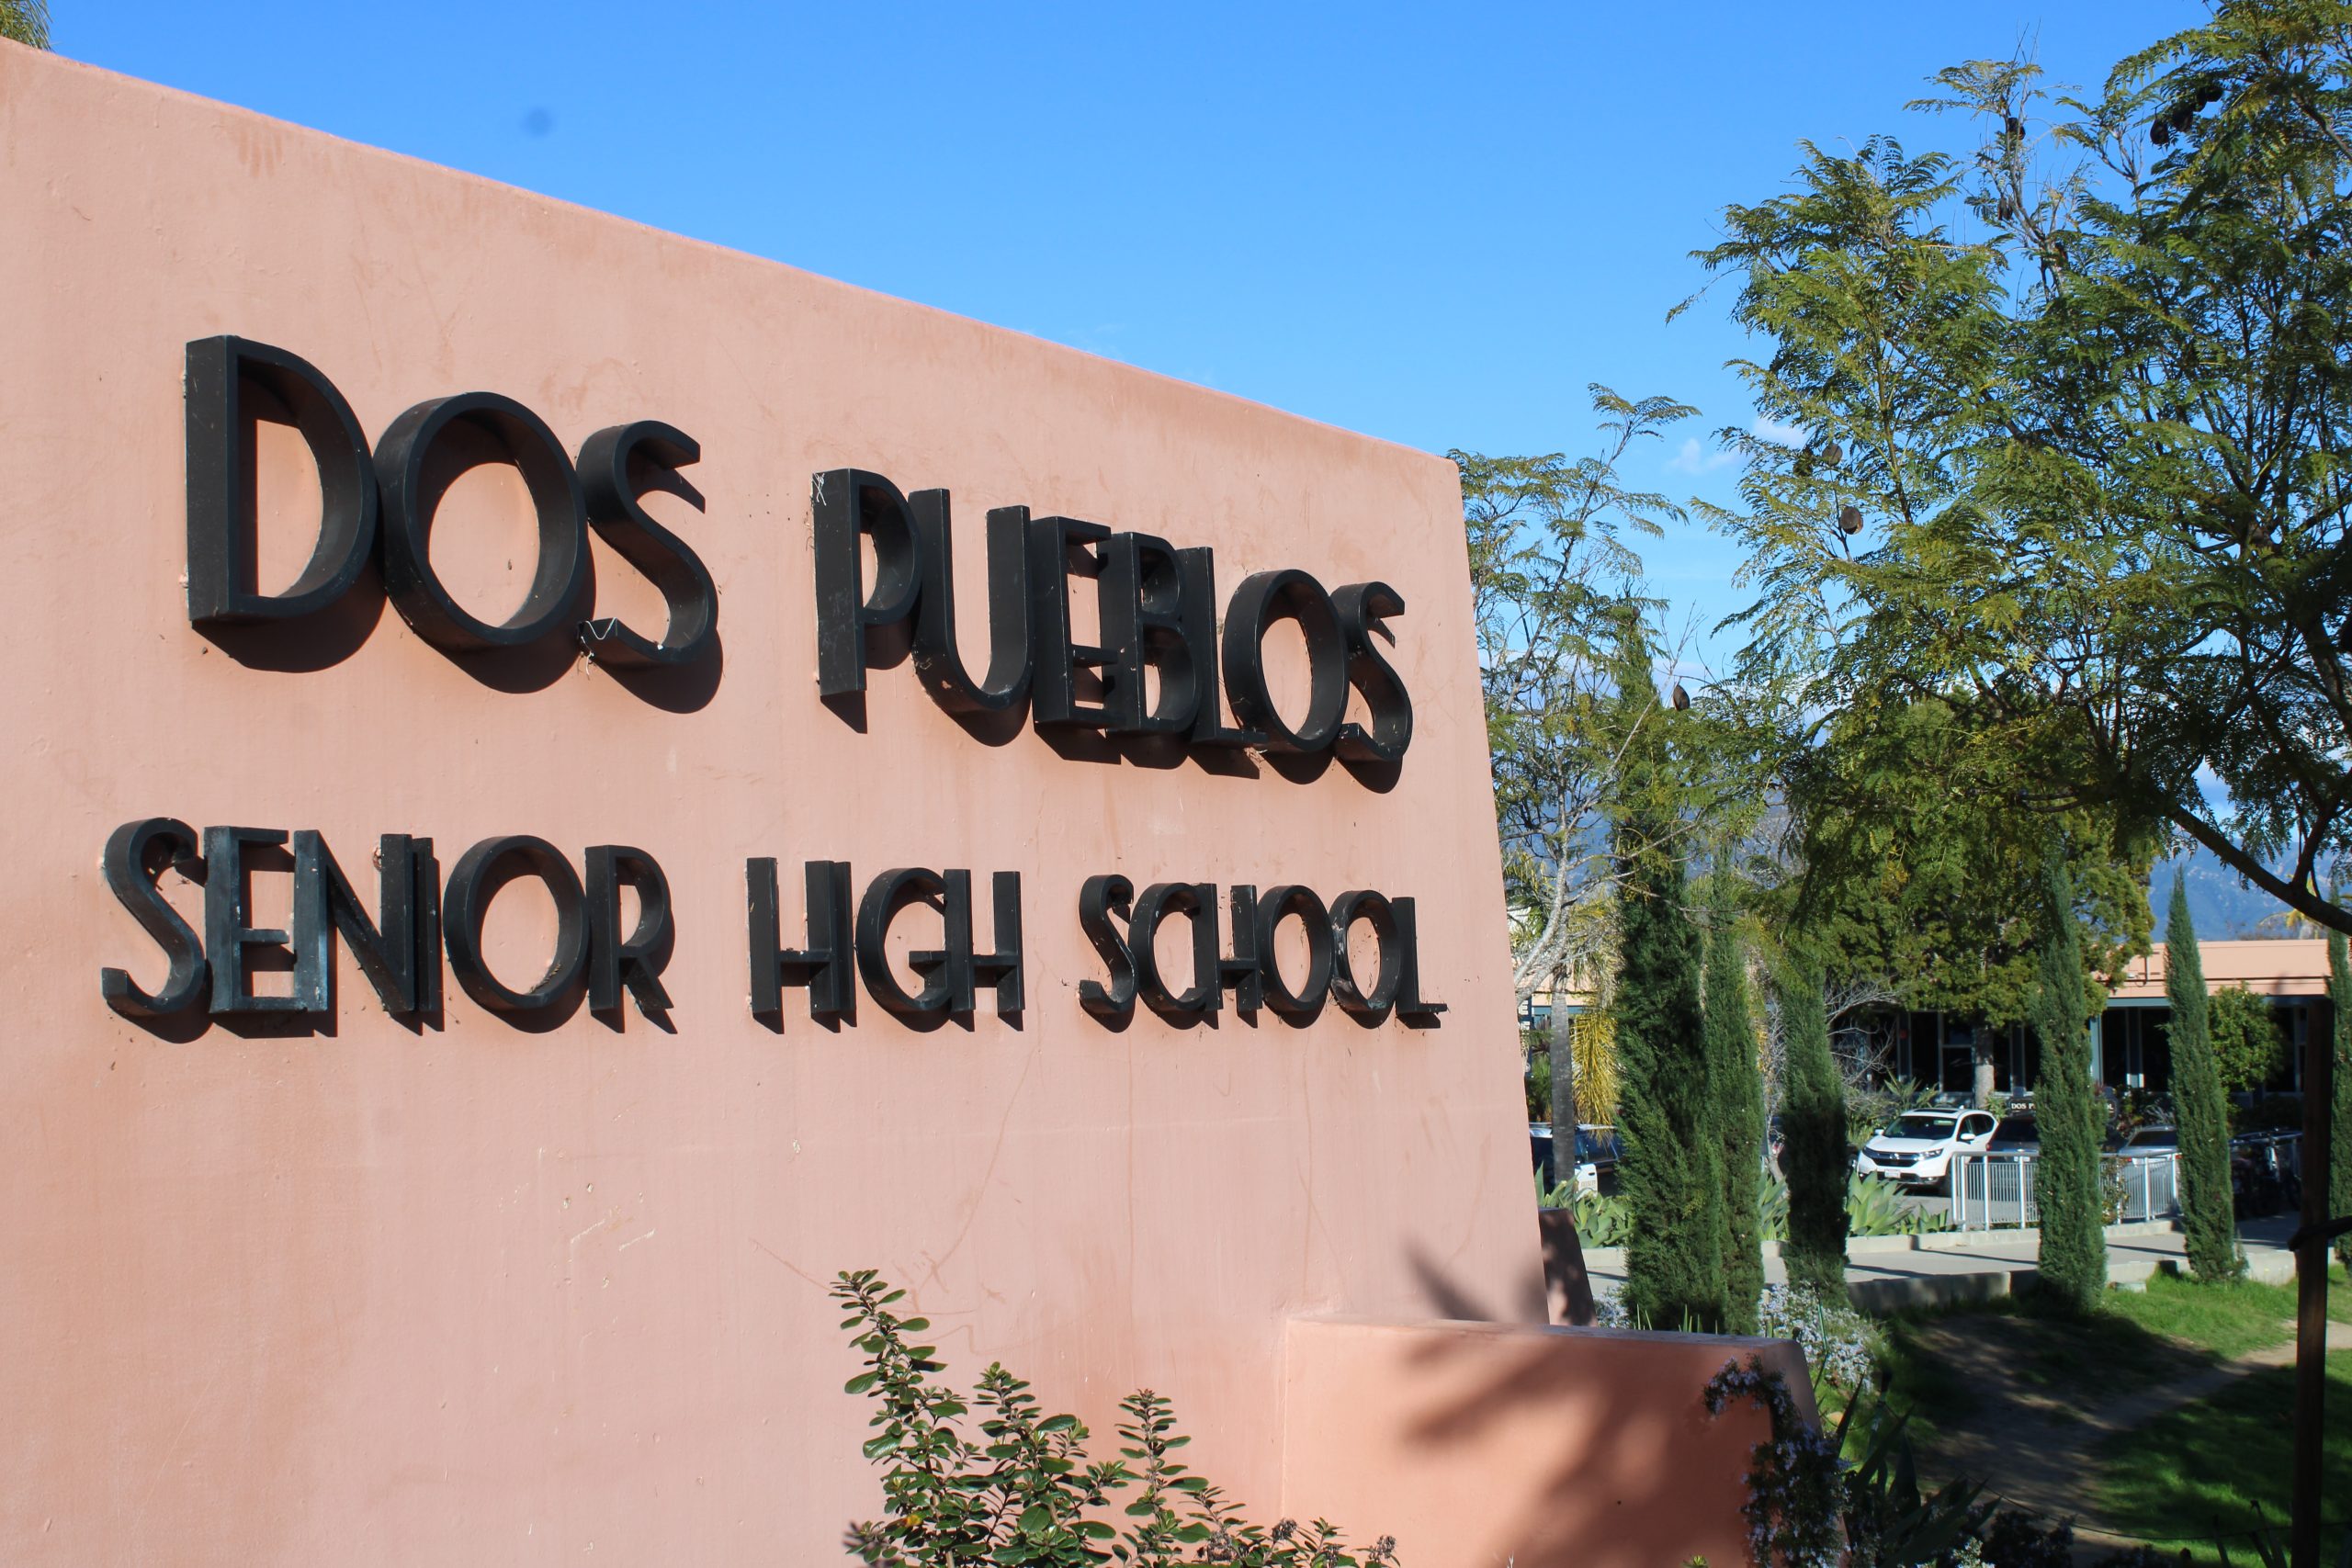 “Dos Pueblos Senior High School” sign 